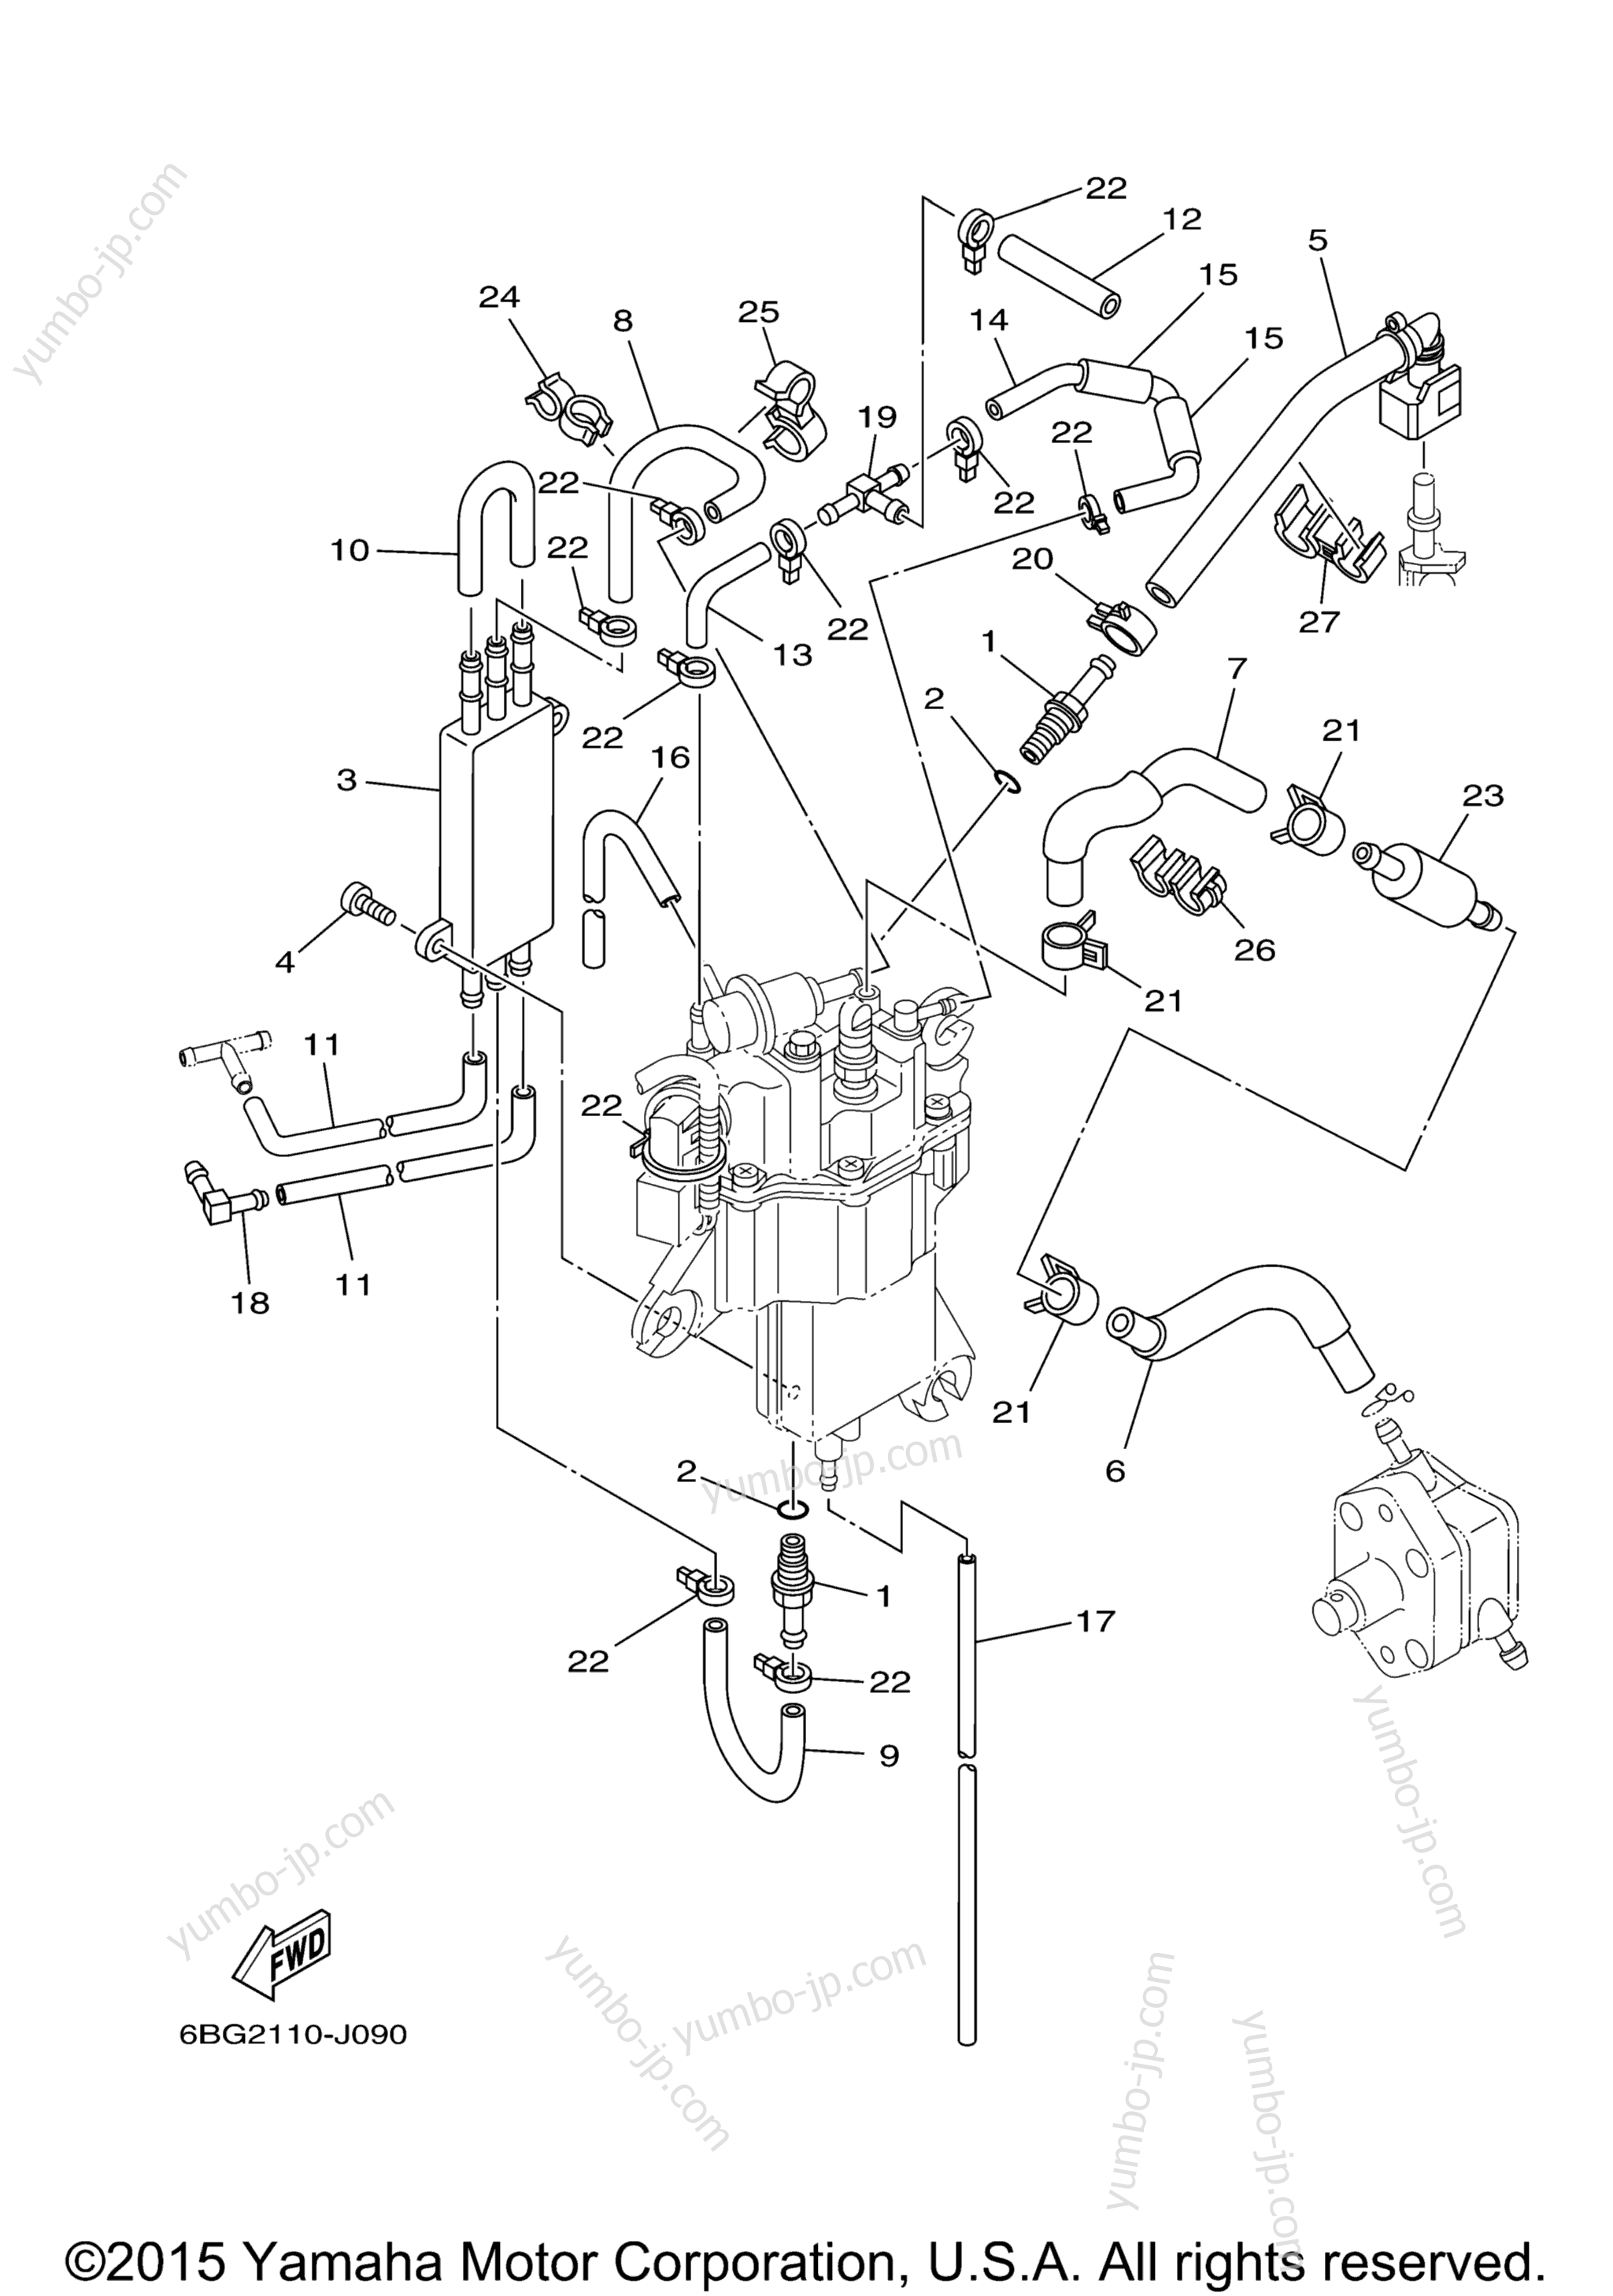 Fuel Injection Pump 2 для лодочных моторов YAMAHA F40LA_0112 (0112) 2006 г.